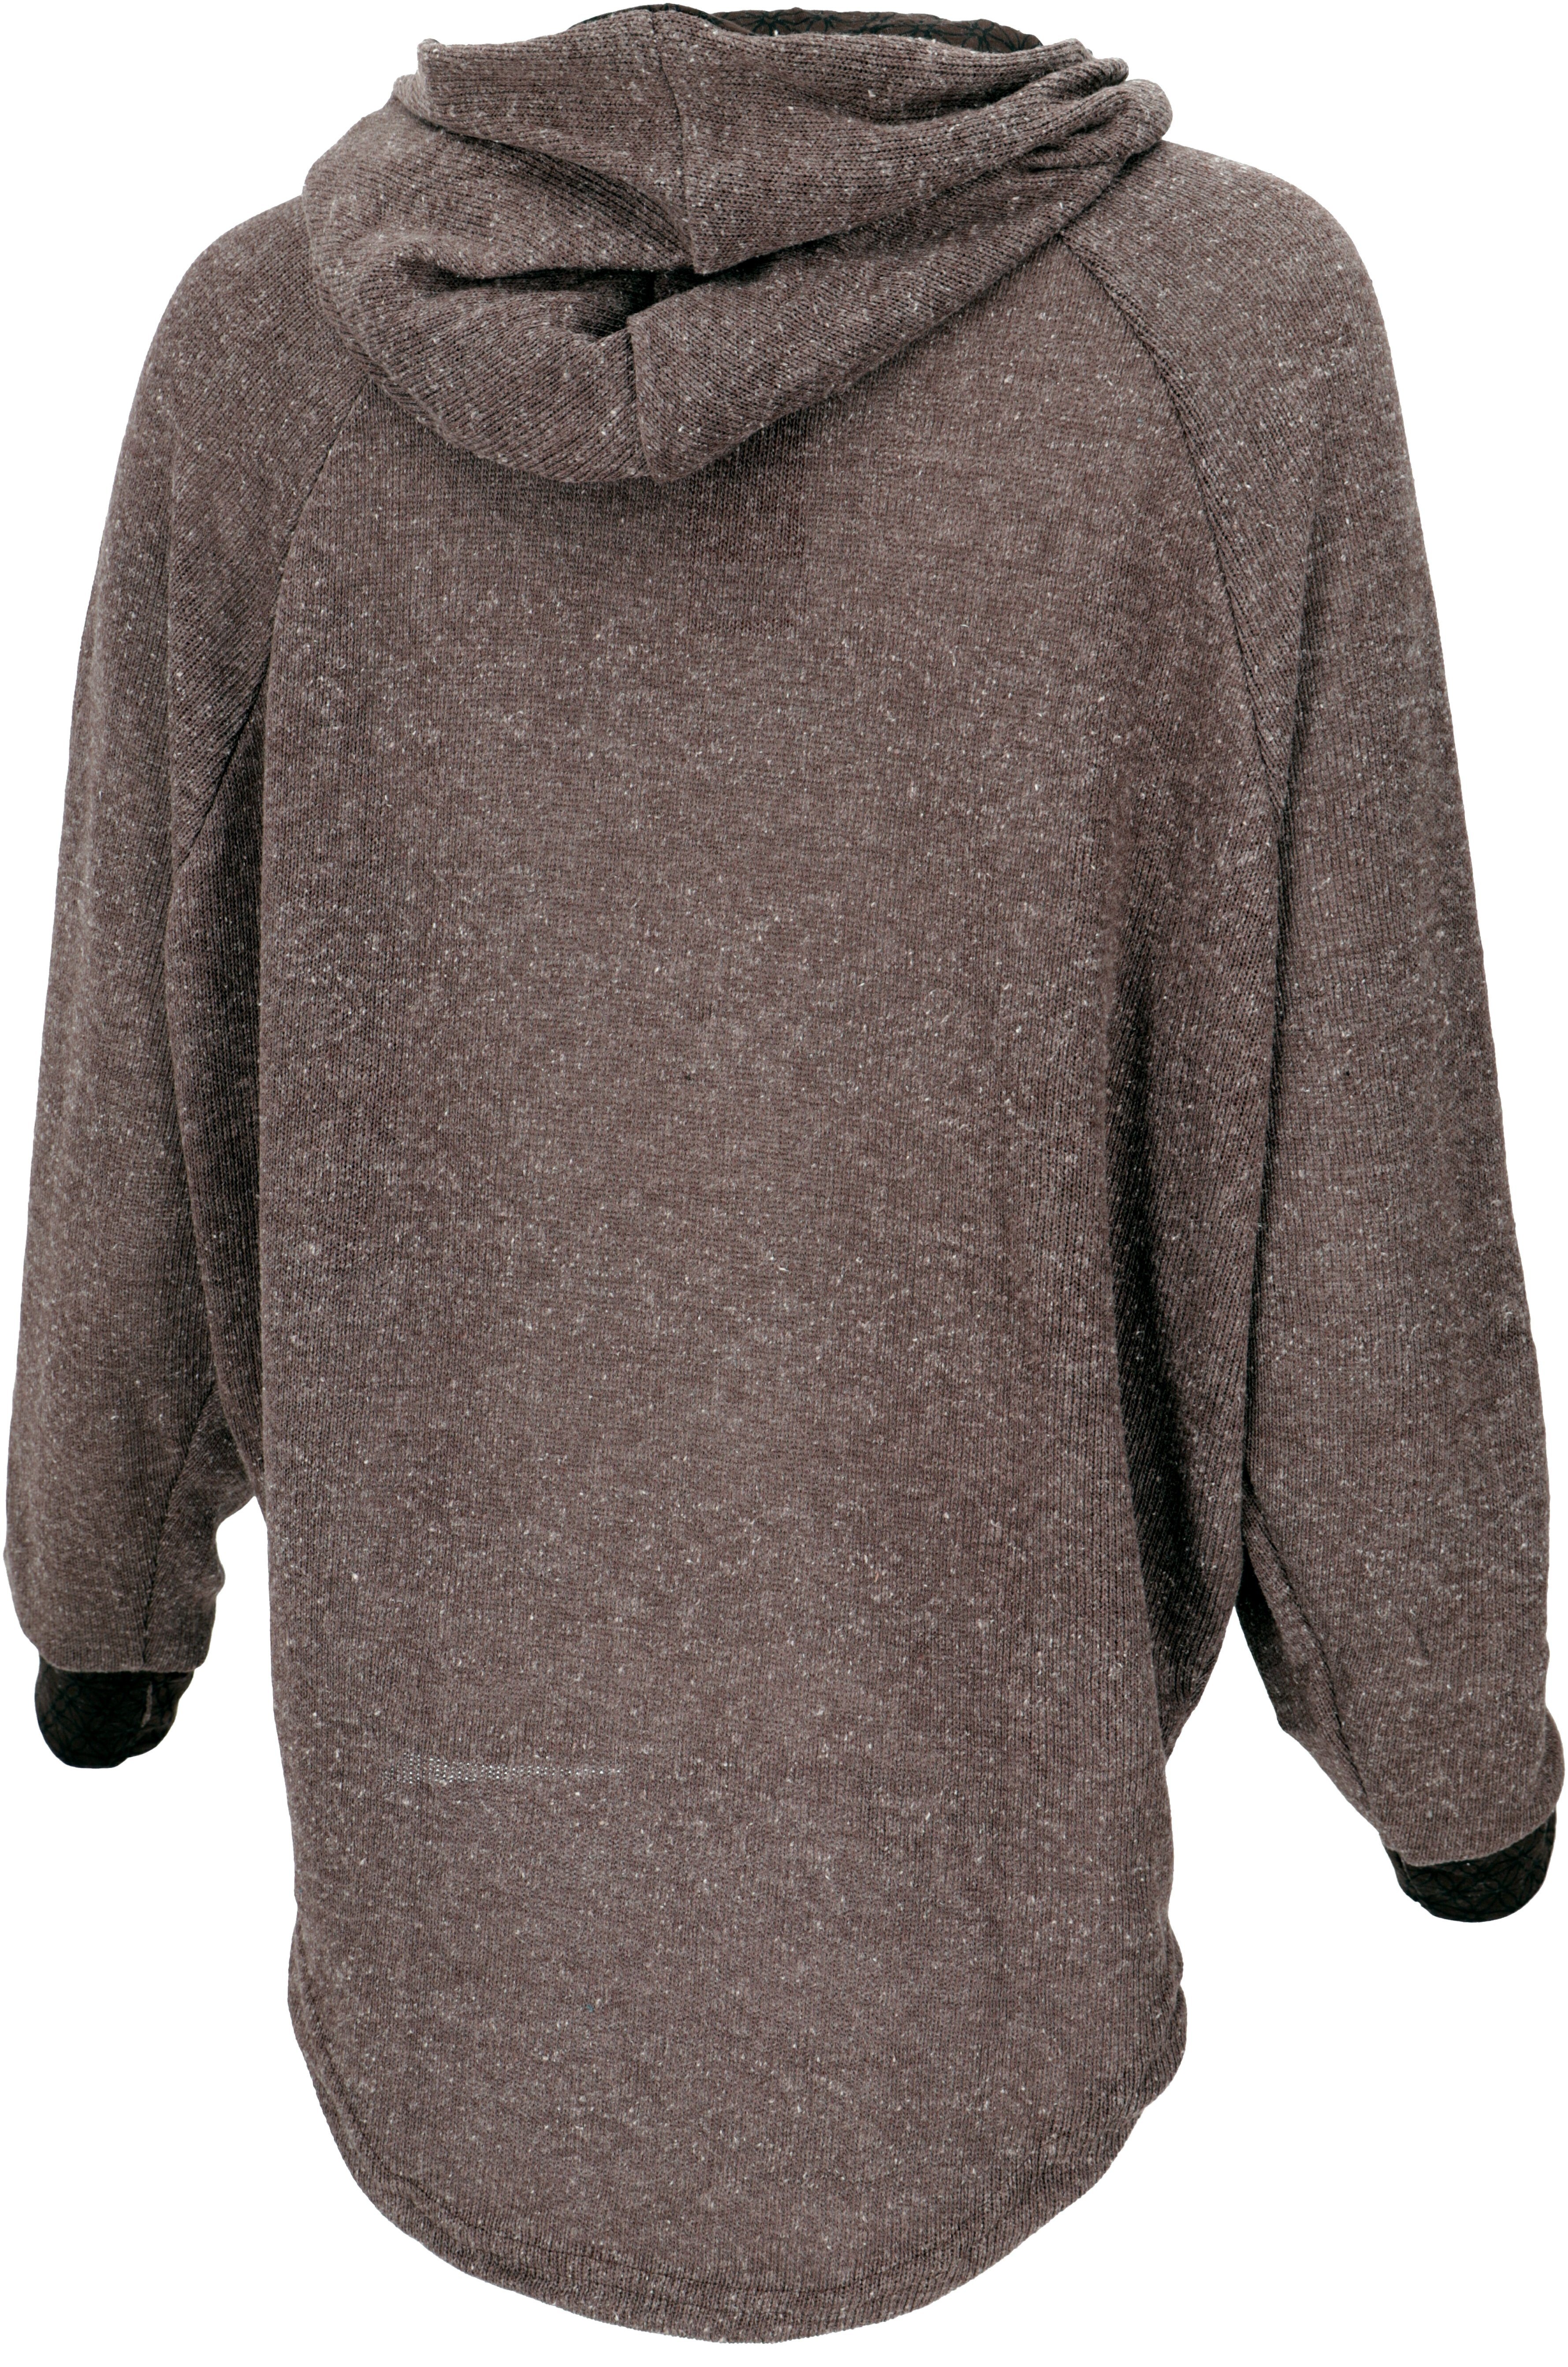 Guru-Shop Hoody, Bekleidung -.. Kapuzenpullover braun Sweatshirt, alternative Pullover, Longsleeve